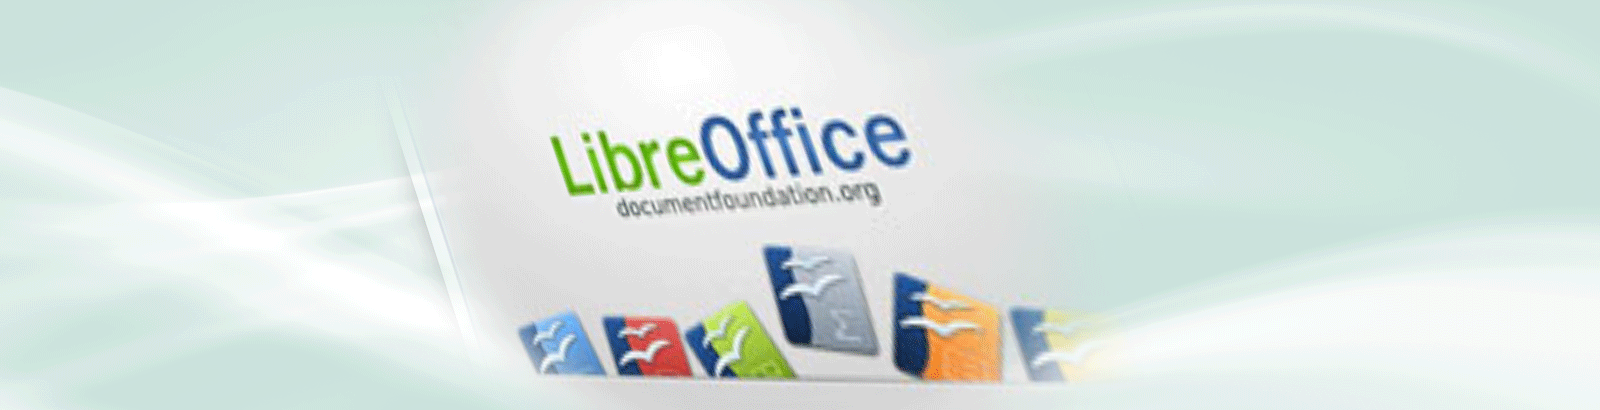 Modelos do LibreOffice podem melhorar a qualidade de suas apresentações